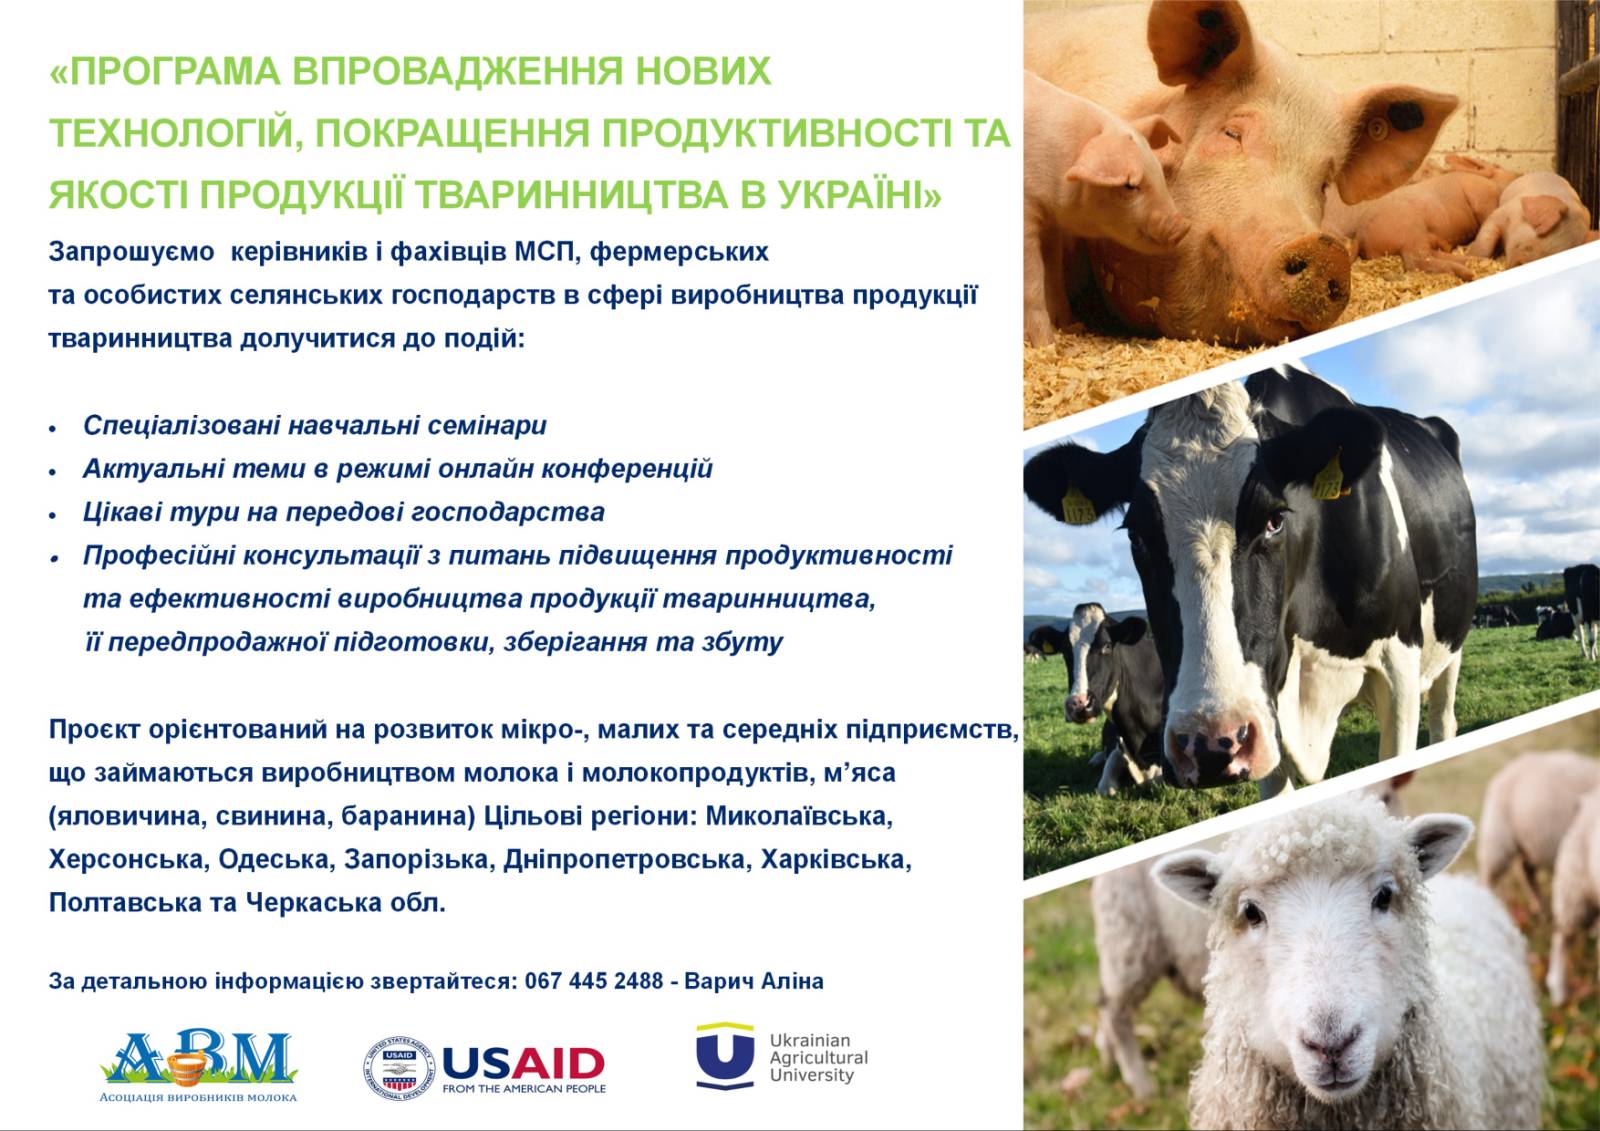 Консультаційний центр АВМ отримав грантову підтримку на розвиток сектору виробництва продукції тваринного походження